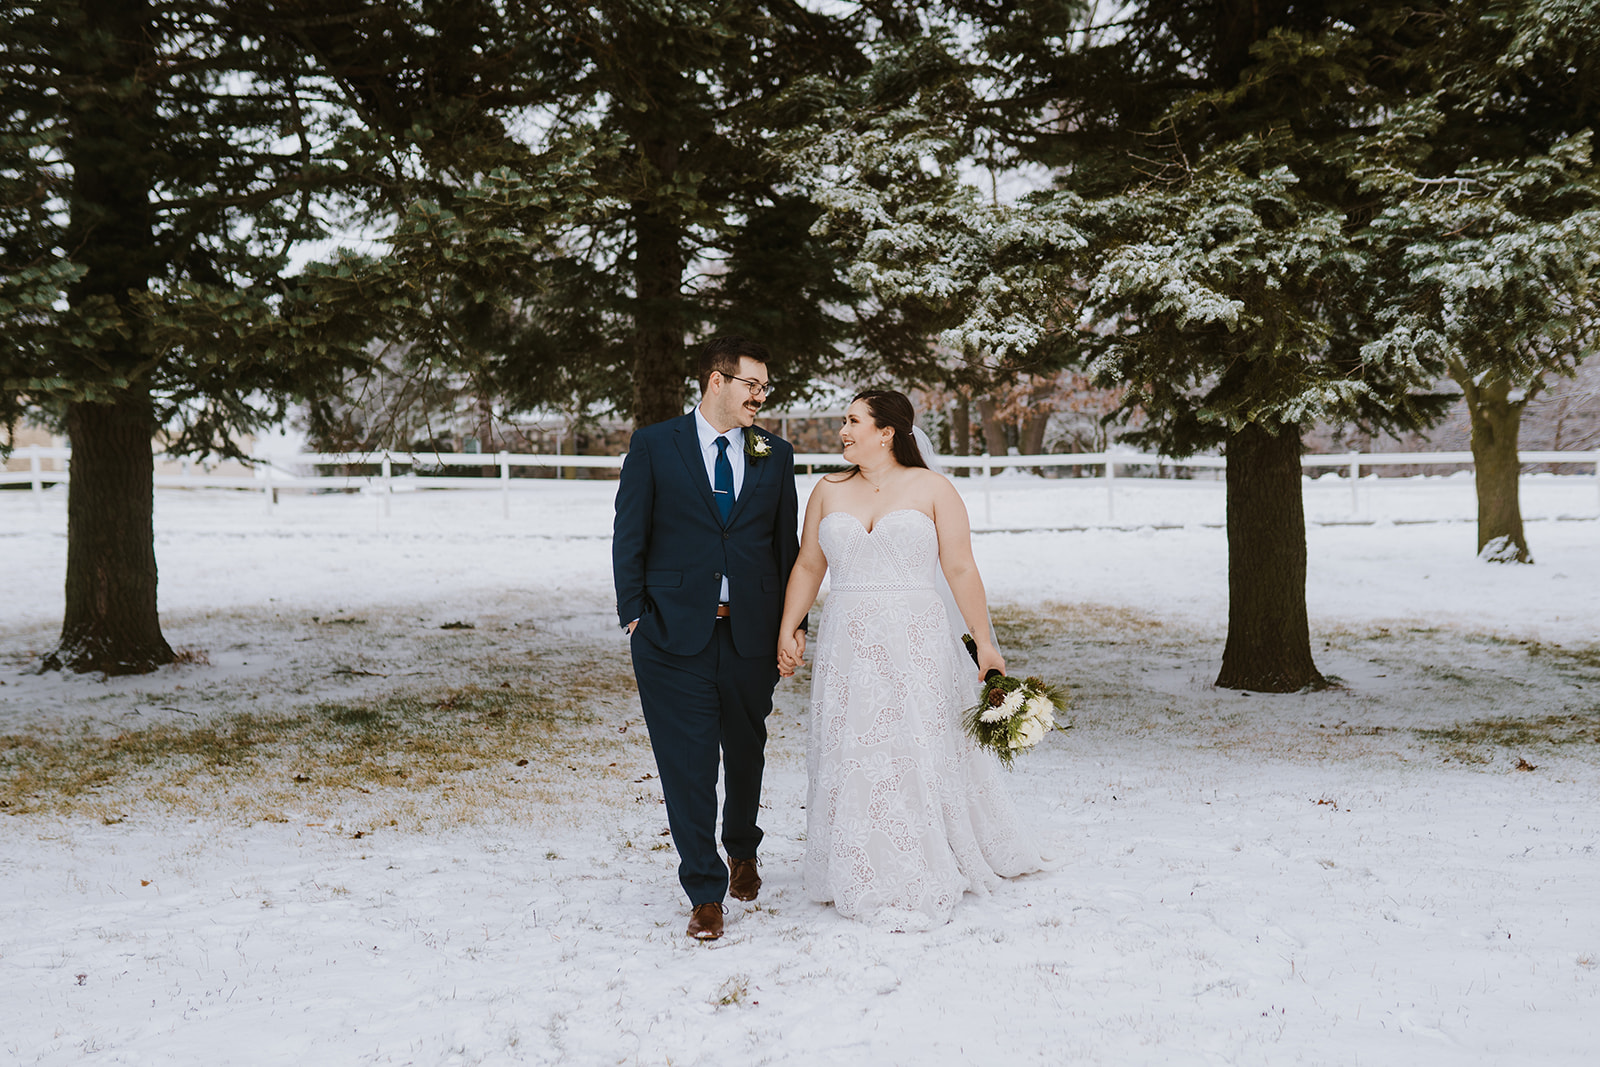 Intimate Winter Wedding in Michigan | Ben & Kaitlynn